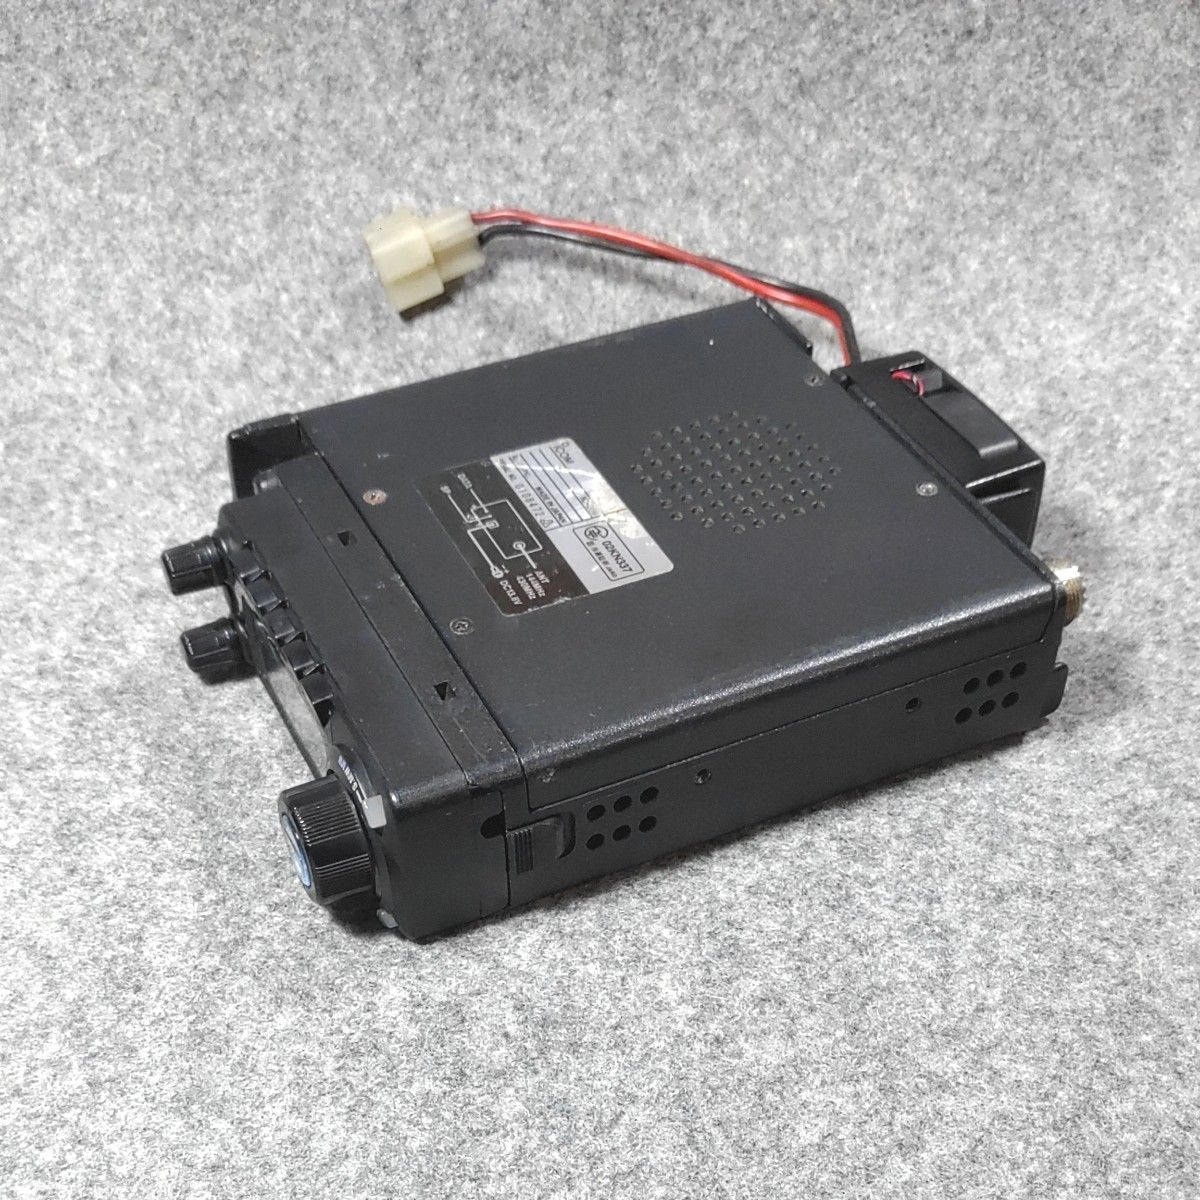 特価ブランド ICOM トランシーバー 144/430 IC-208 アマチュア無線